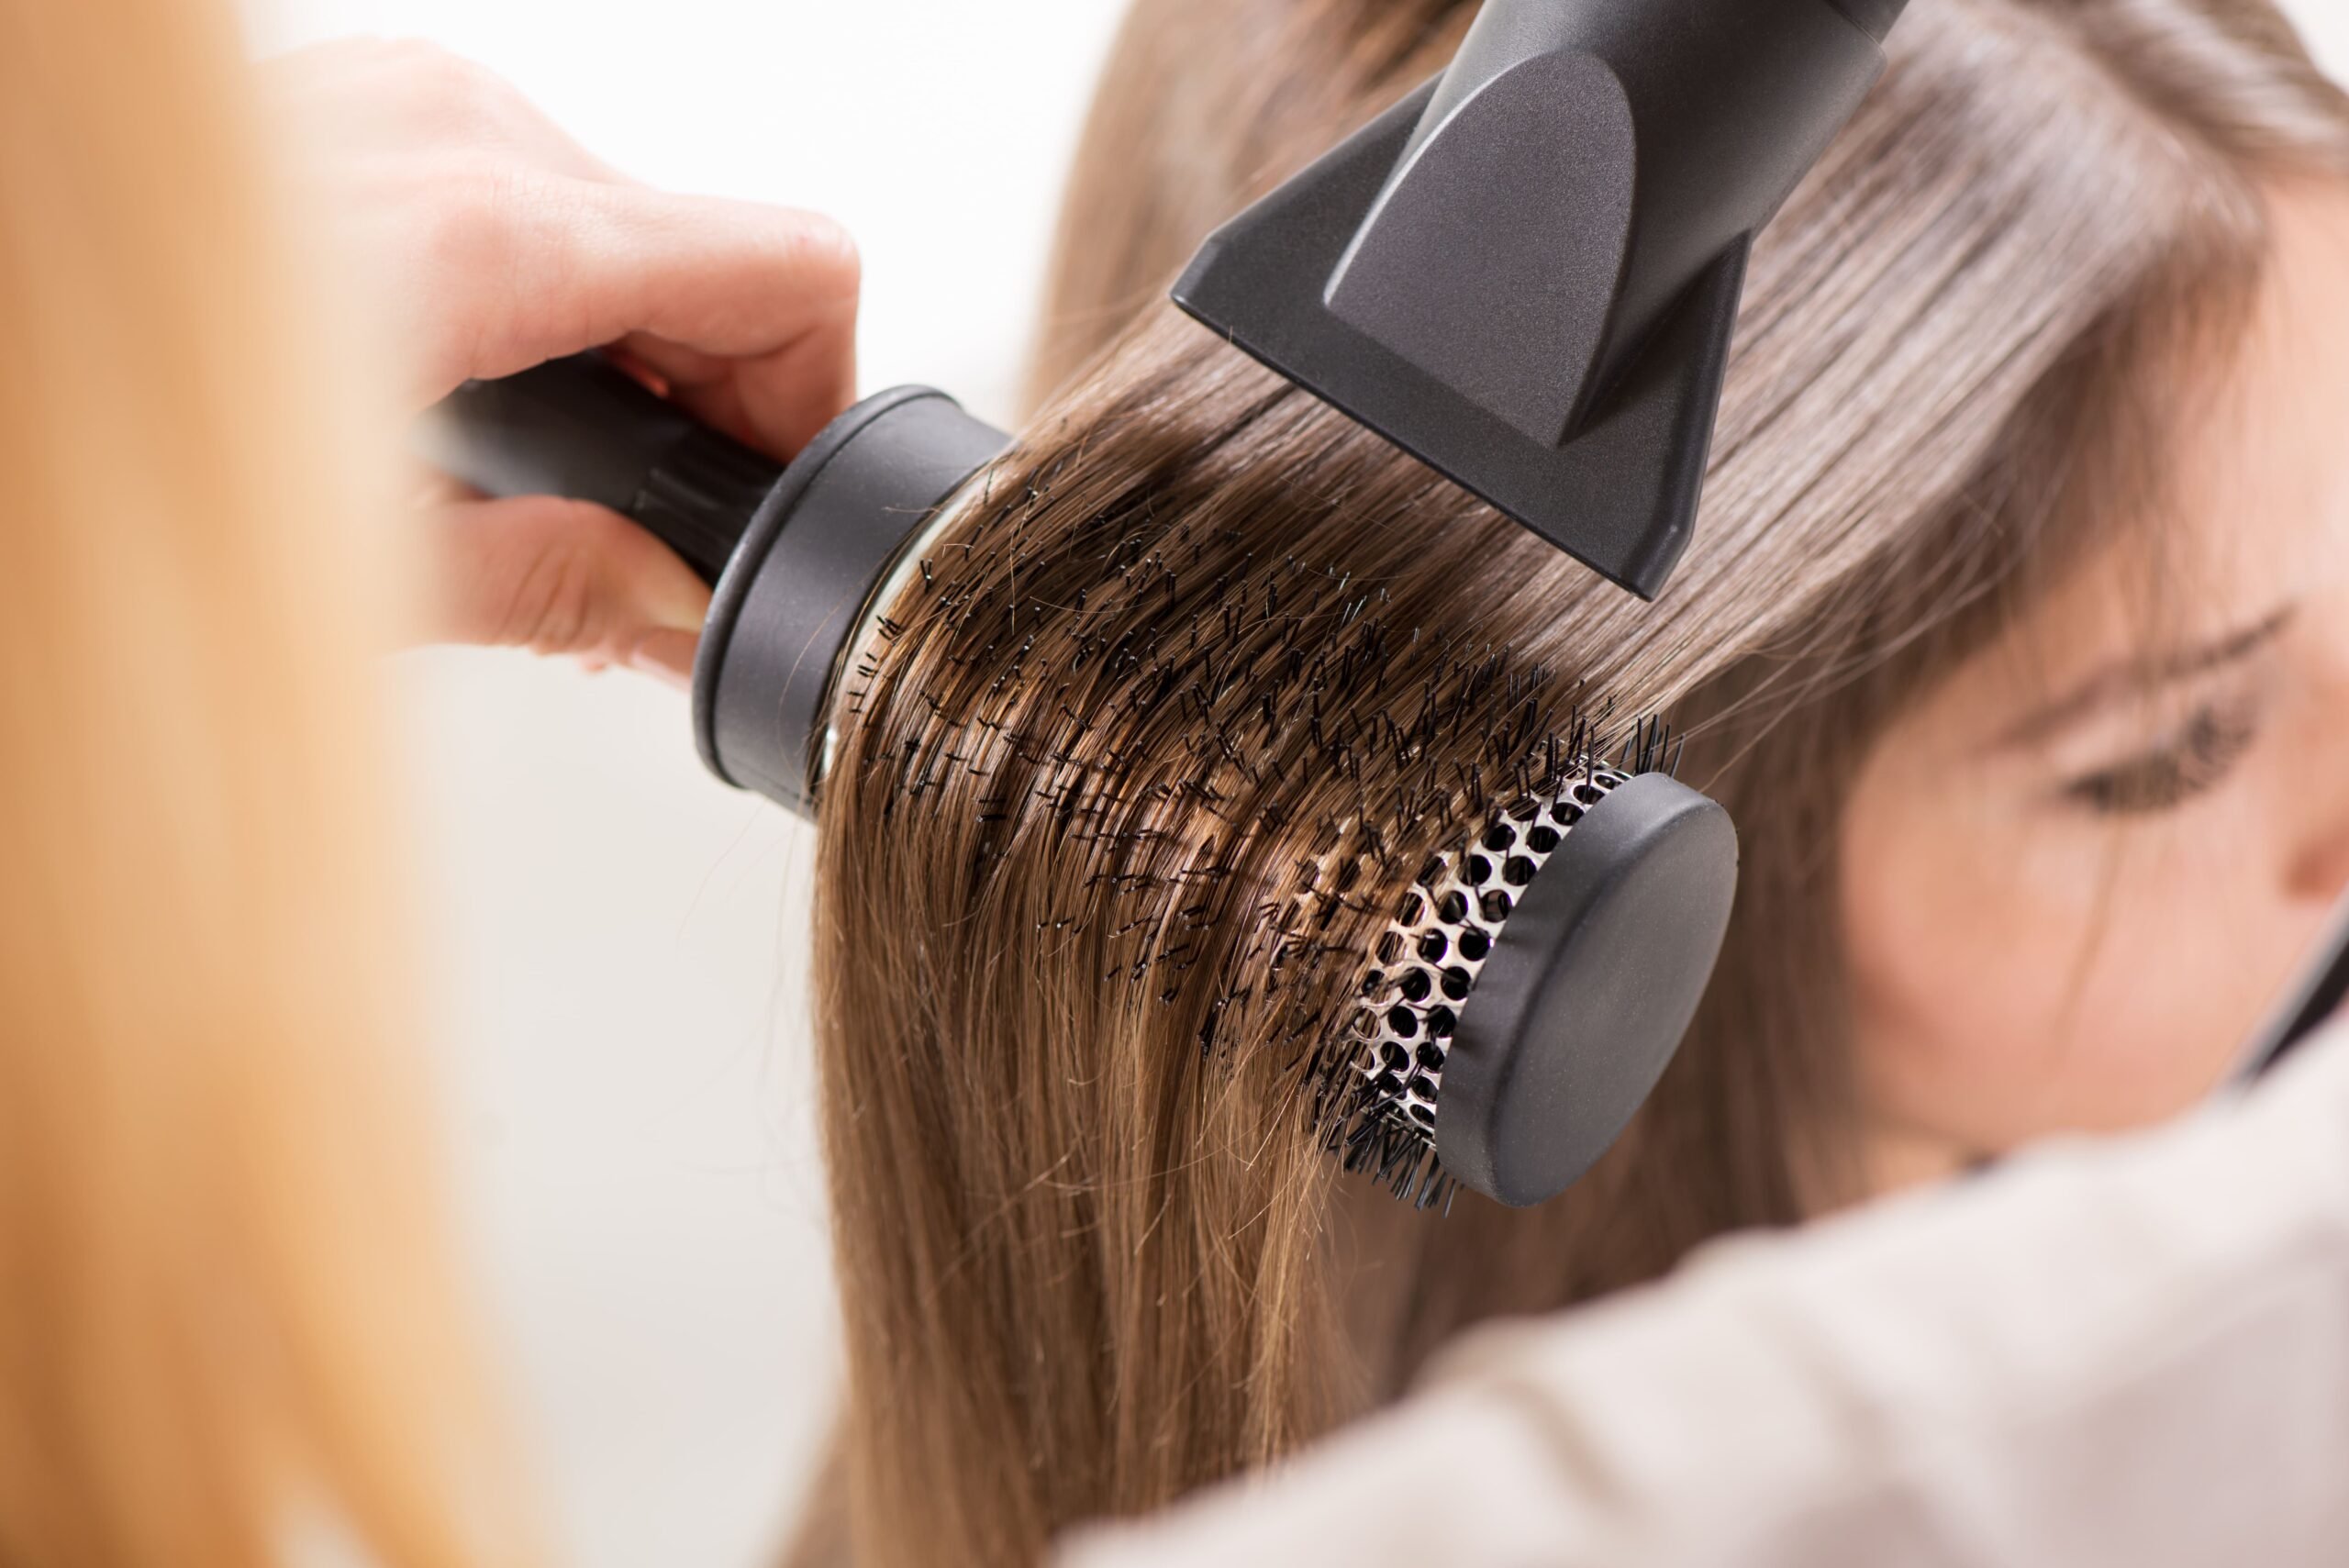 Secador de cabelo: 6 hairstylists indicam modelos que valem o